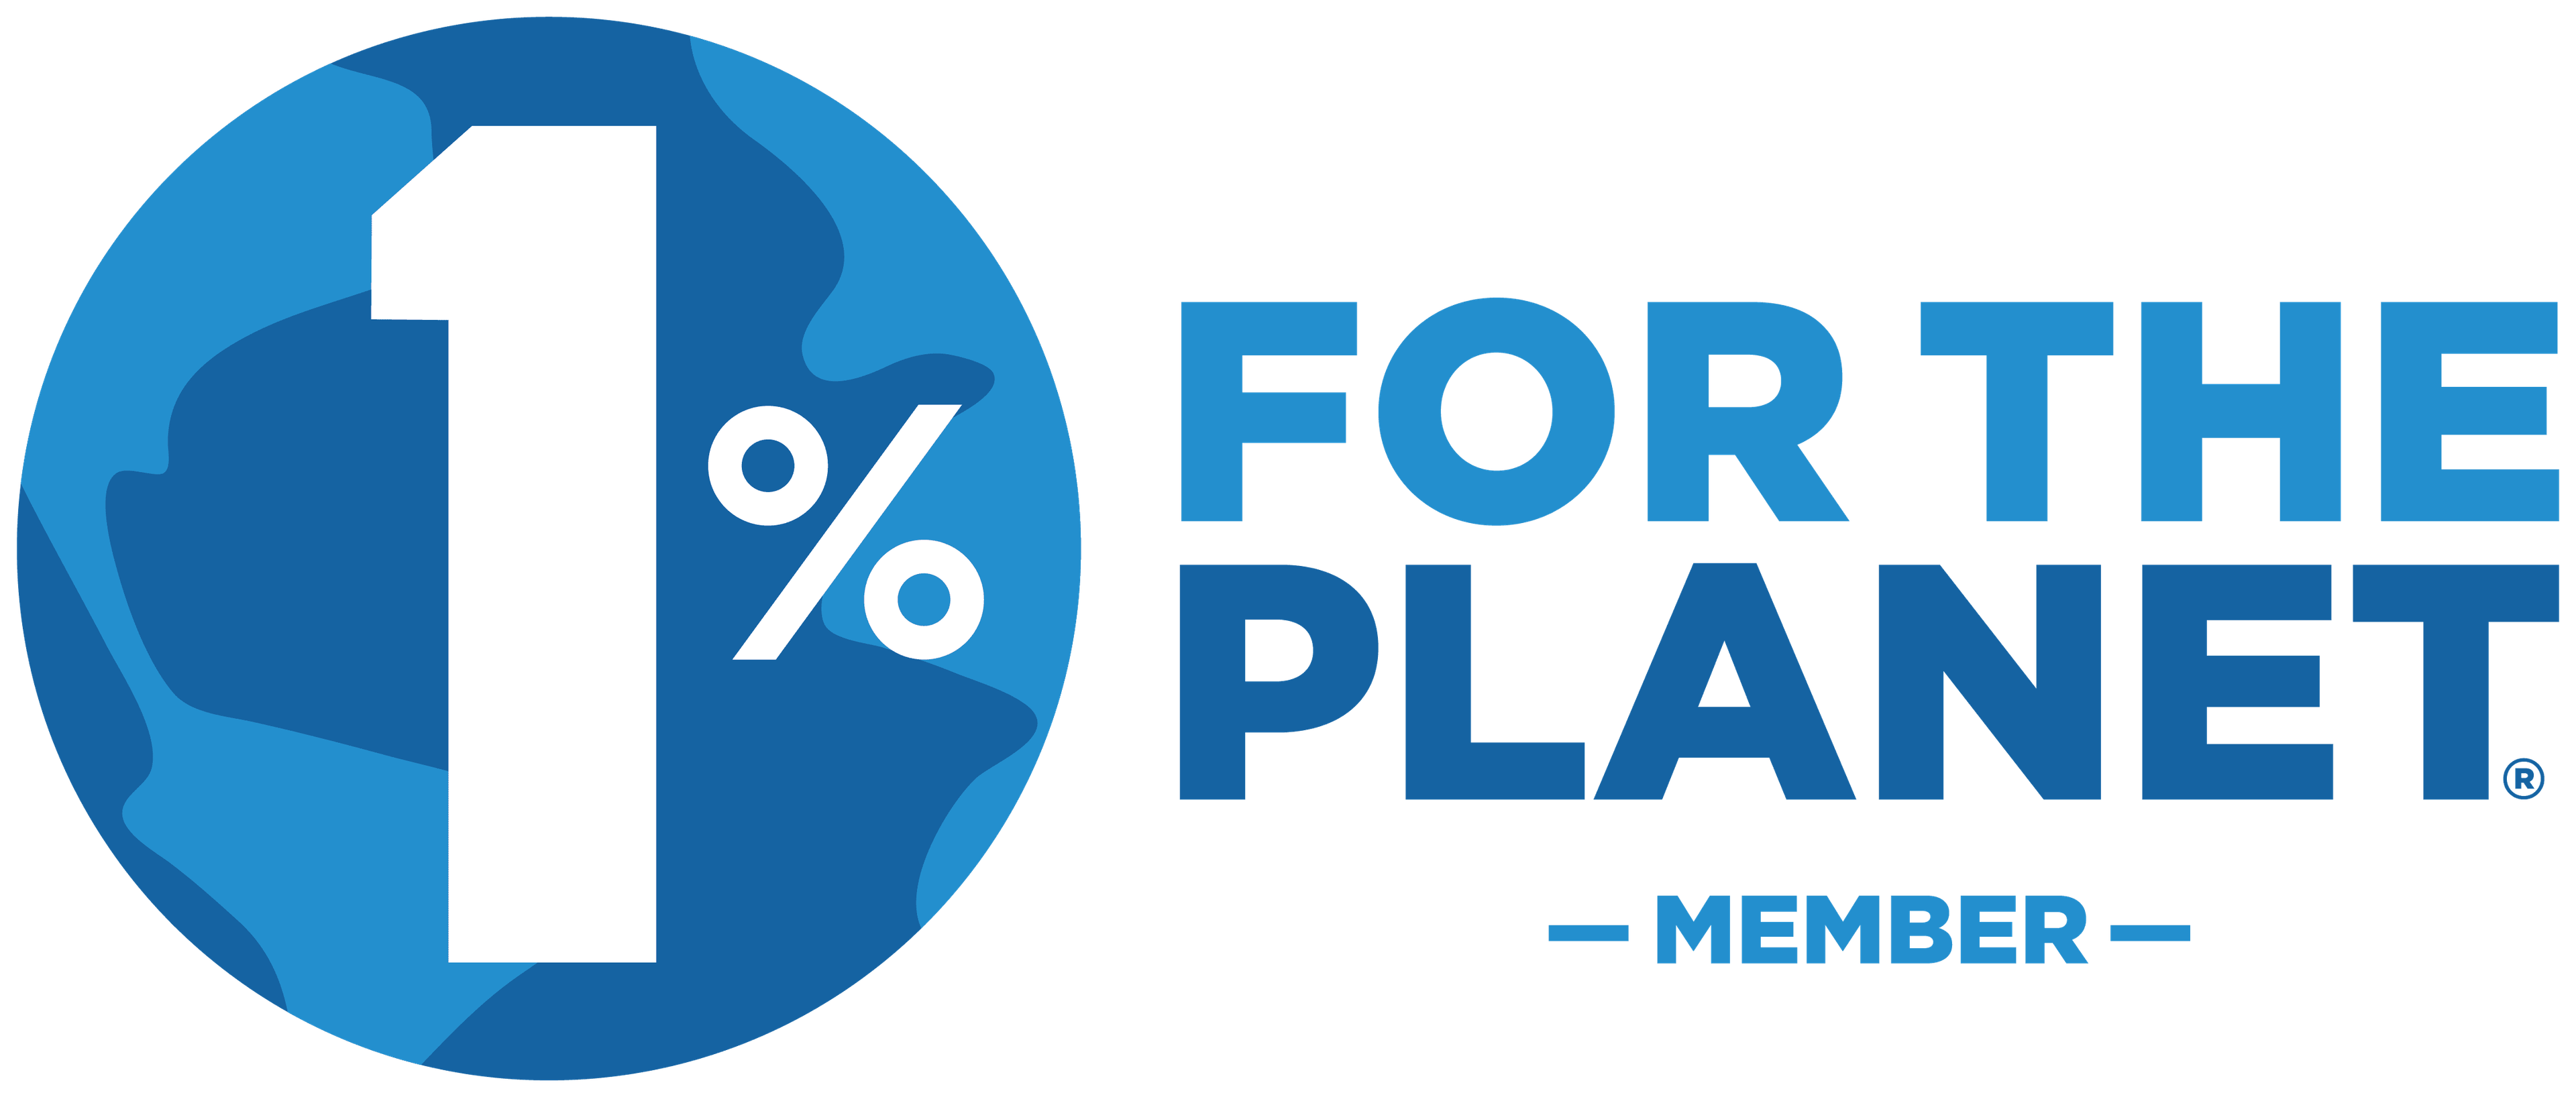 1% For The Planet Member logo.